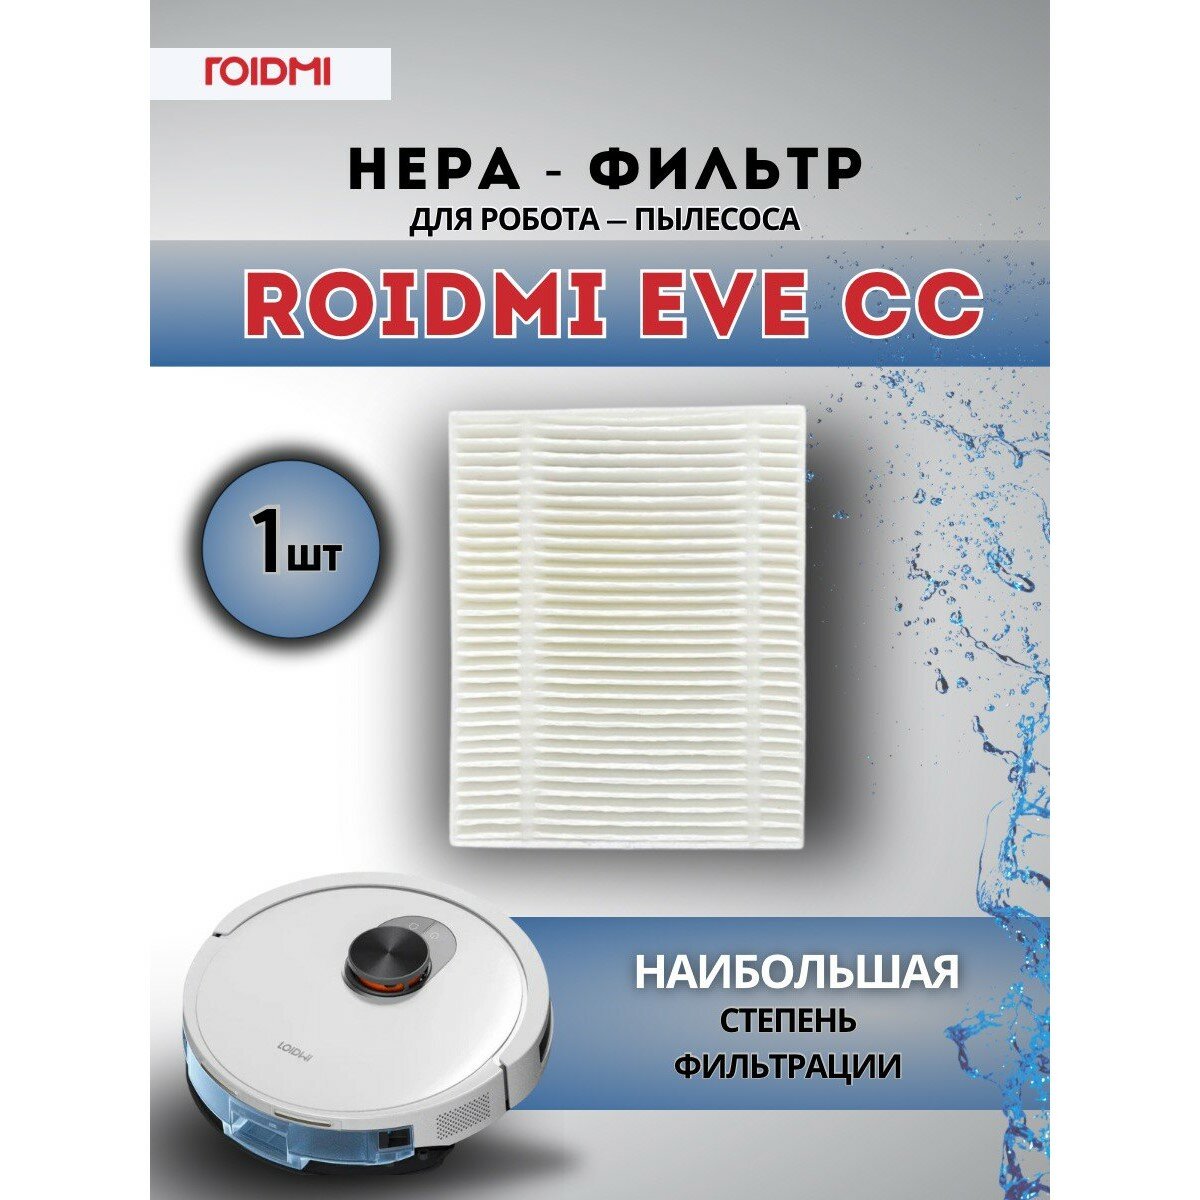 Оригинальный HEPA-фильтр ROIDMI для робота-пылесоса ROIDMI EVE CC, белый